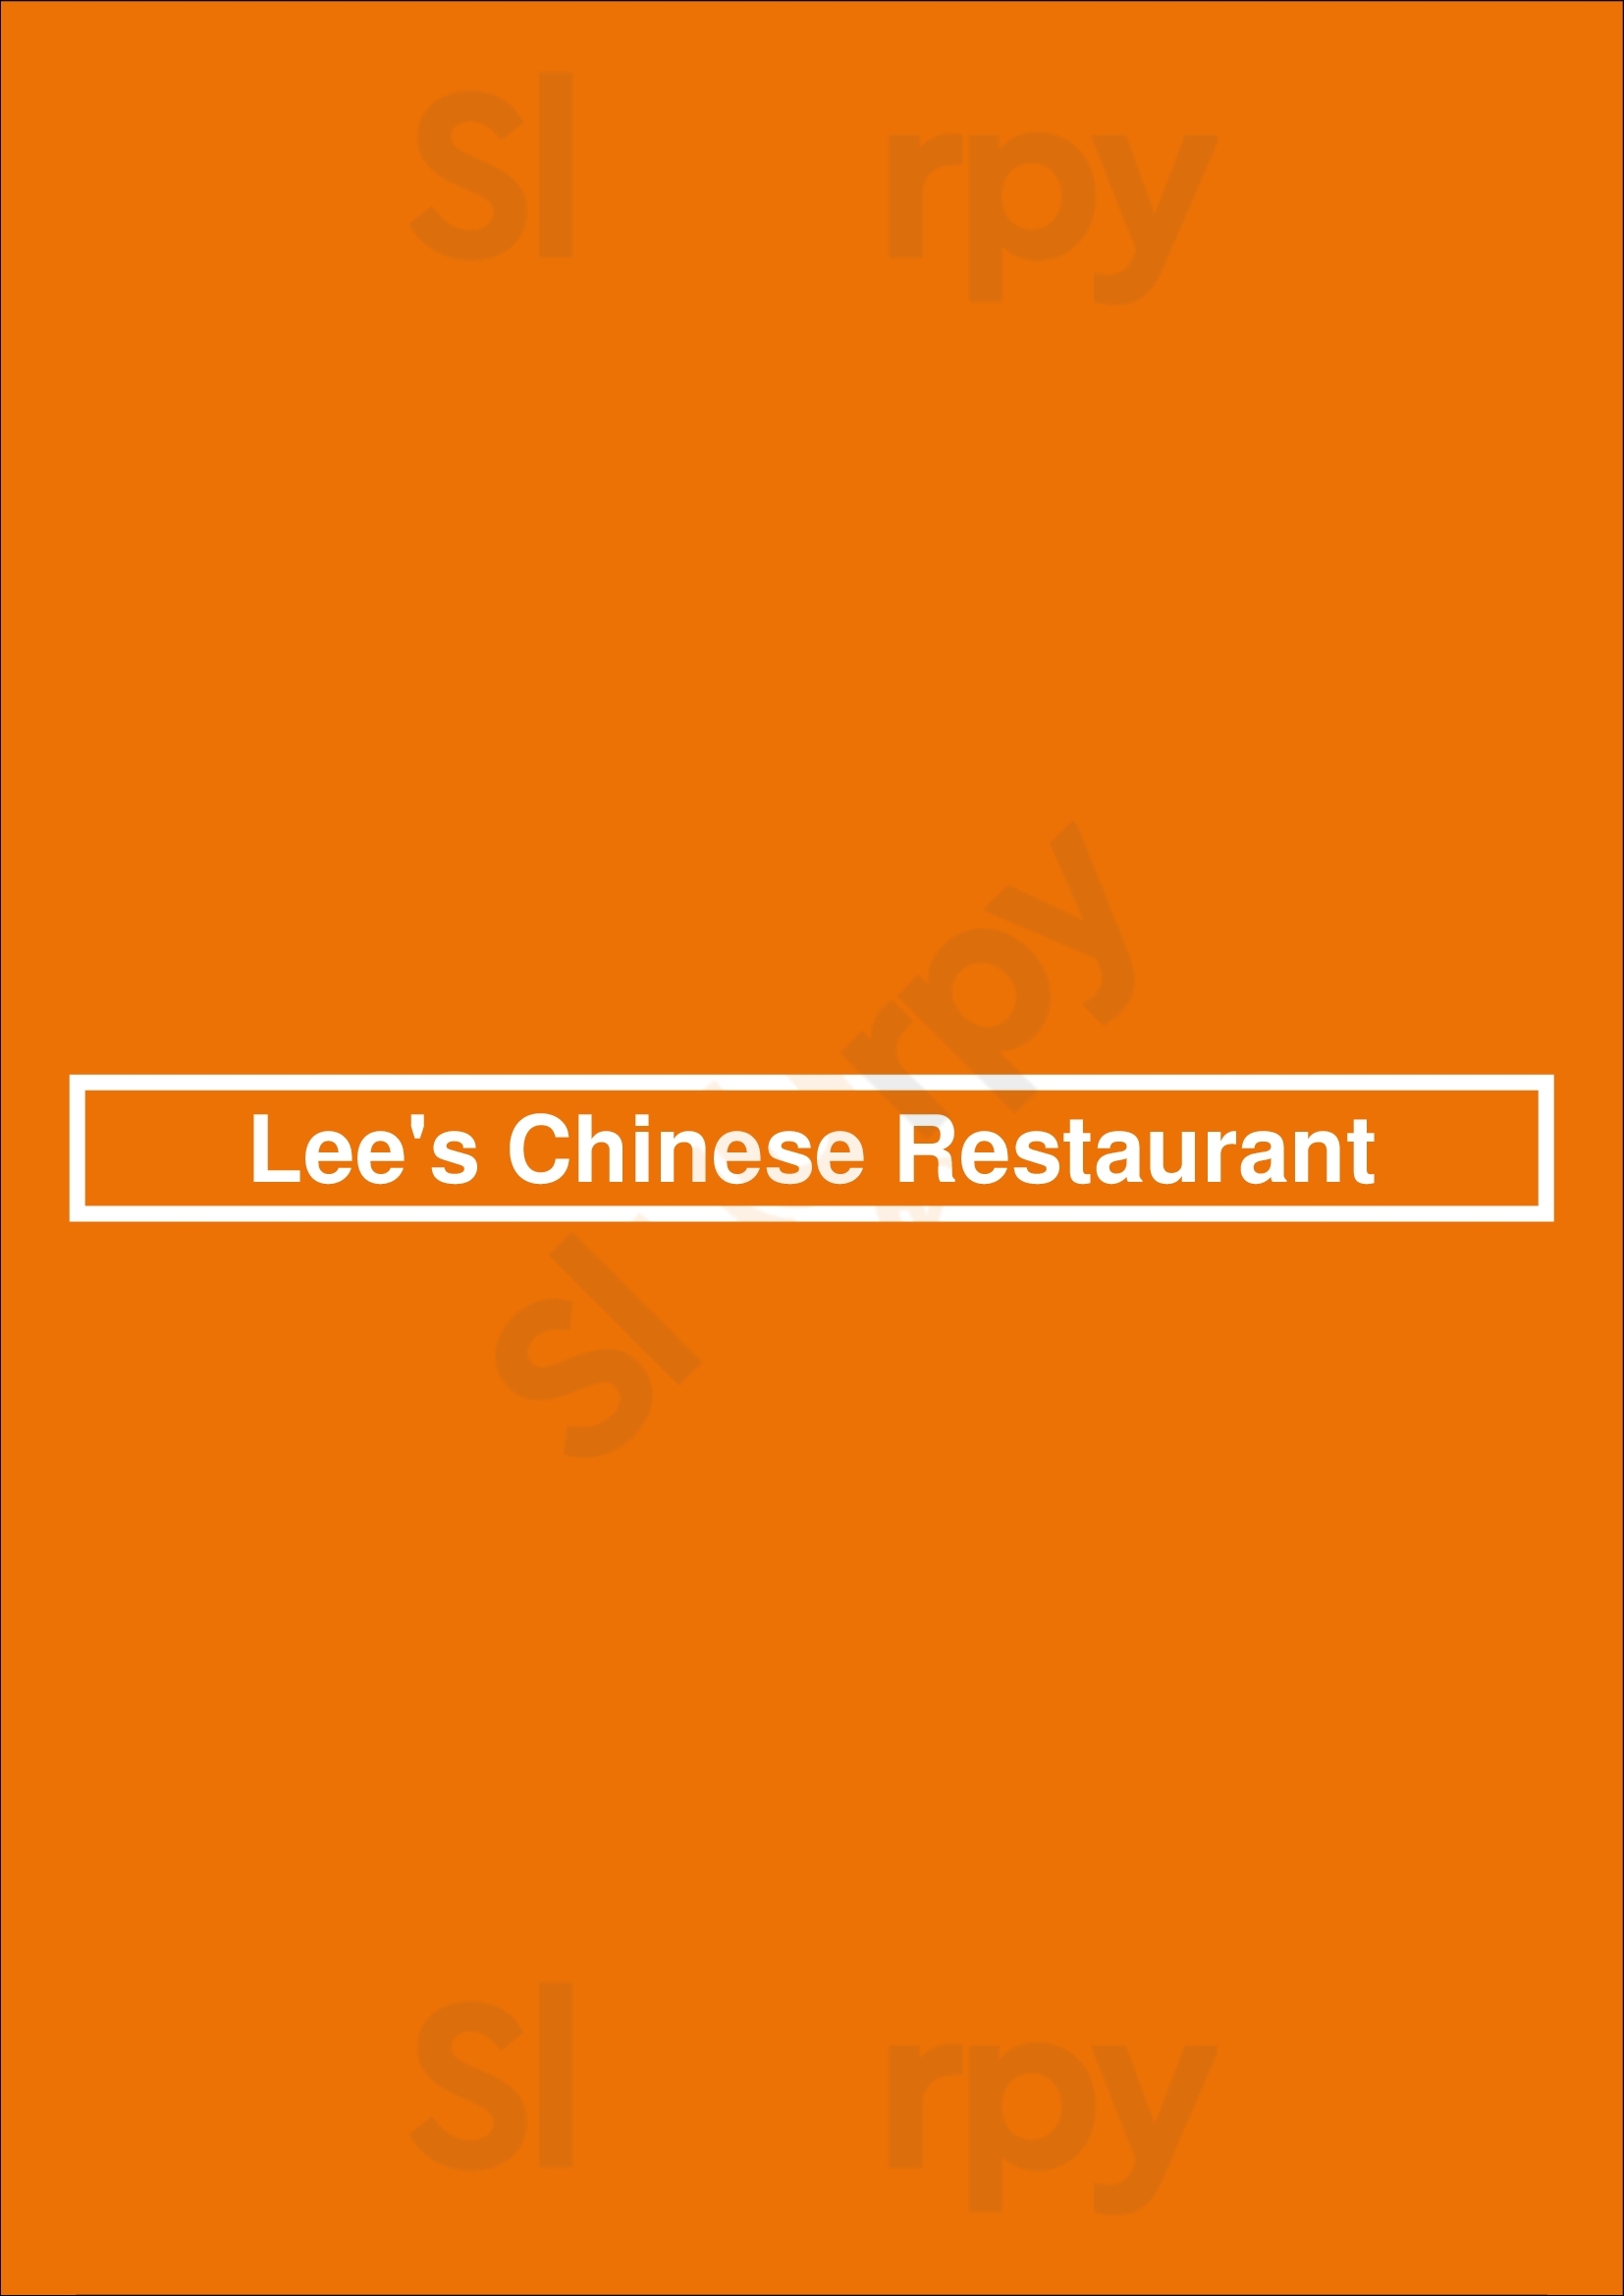 Lee's Chinese Restaurant Wichita Menu - 1